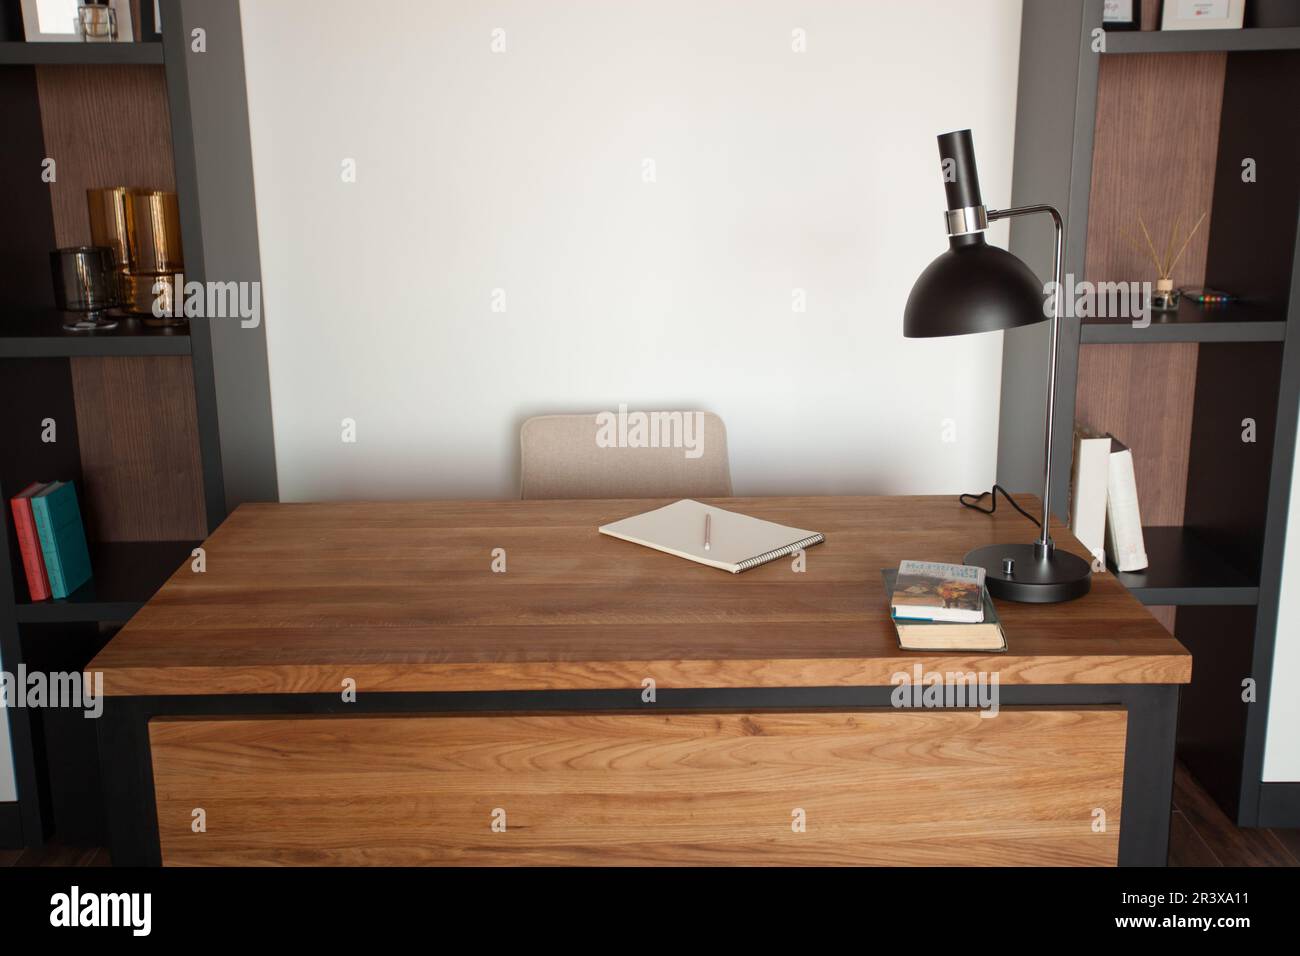 Bureau en bois avec ordinateur portable et documents, livres, intérieur moderne d'une armoire confortable, table pour homme d'affaires ou étudiant à la maison, espace de travail confortable, espace de travail avec ordinateur dans l'appartement. Banque D'Images